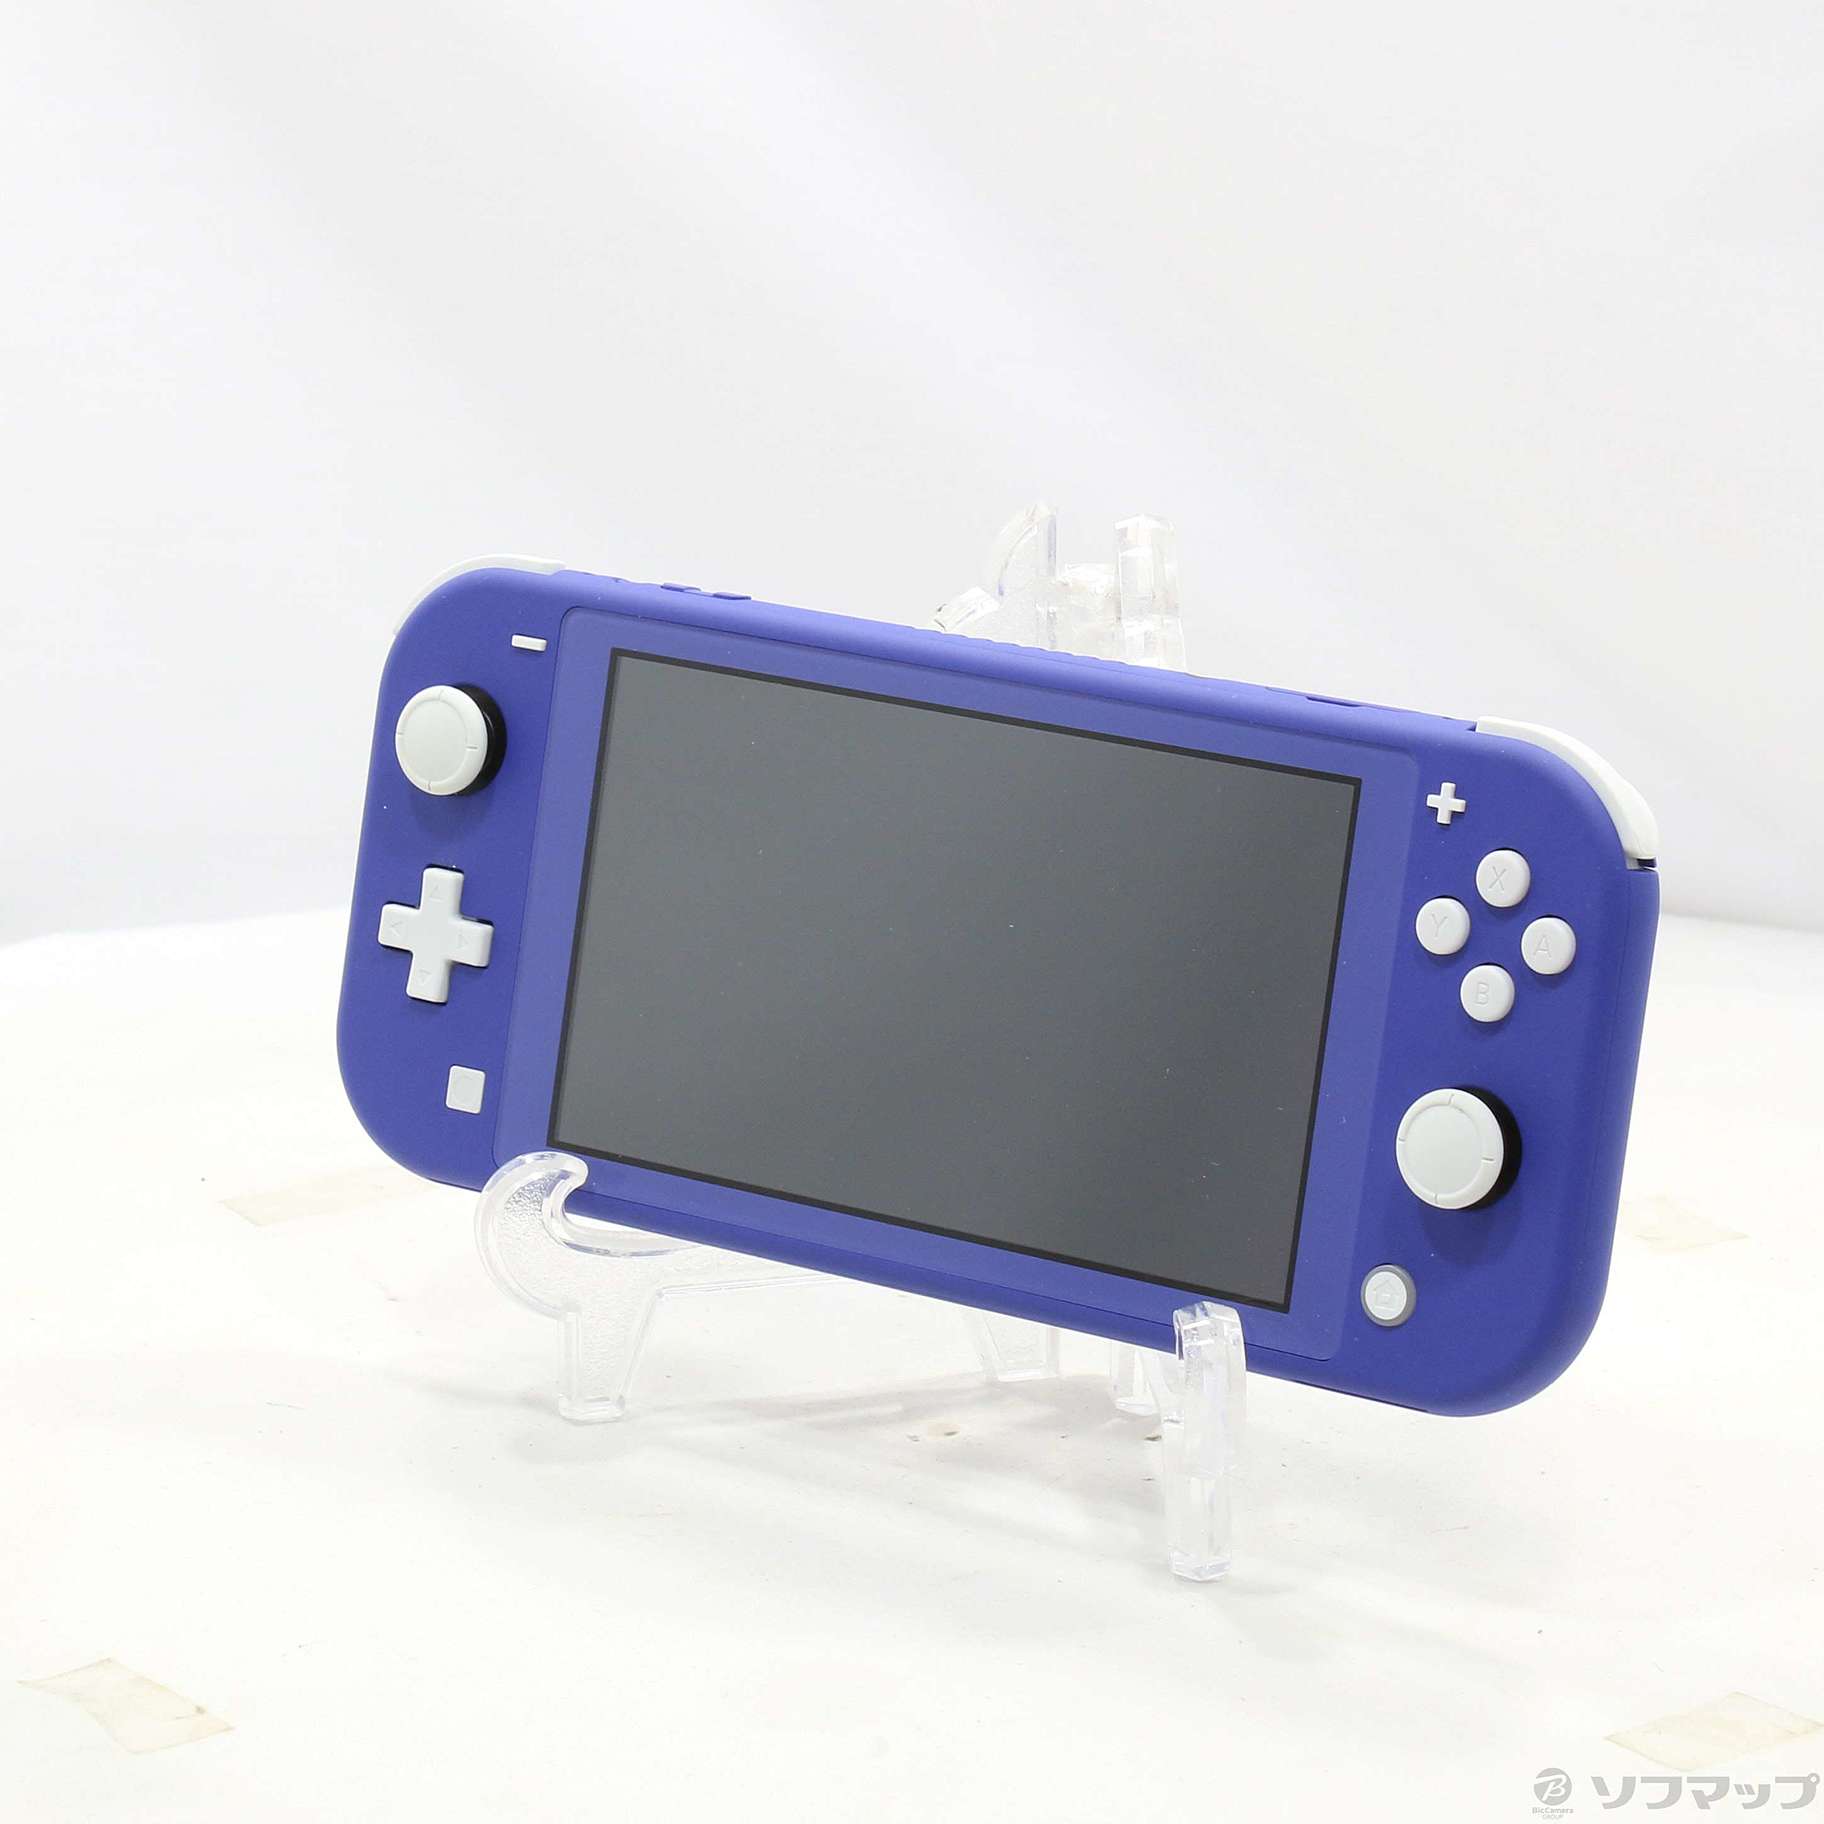 【新品未開封】Nintendo Switch Lite ブルー